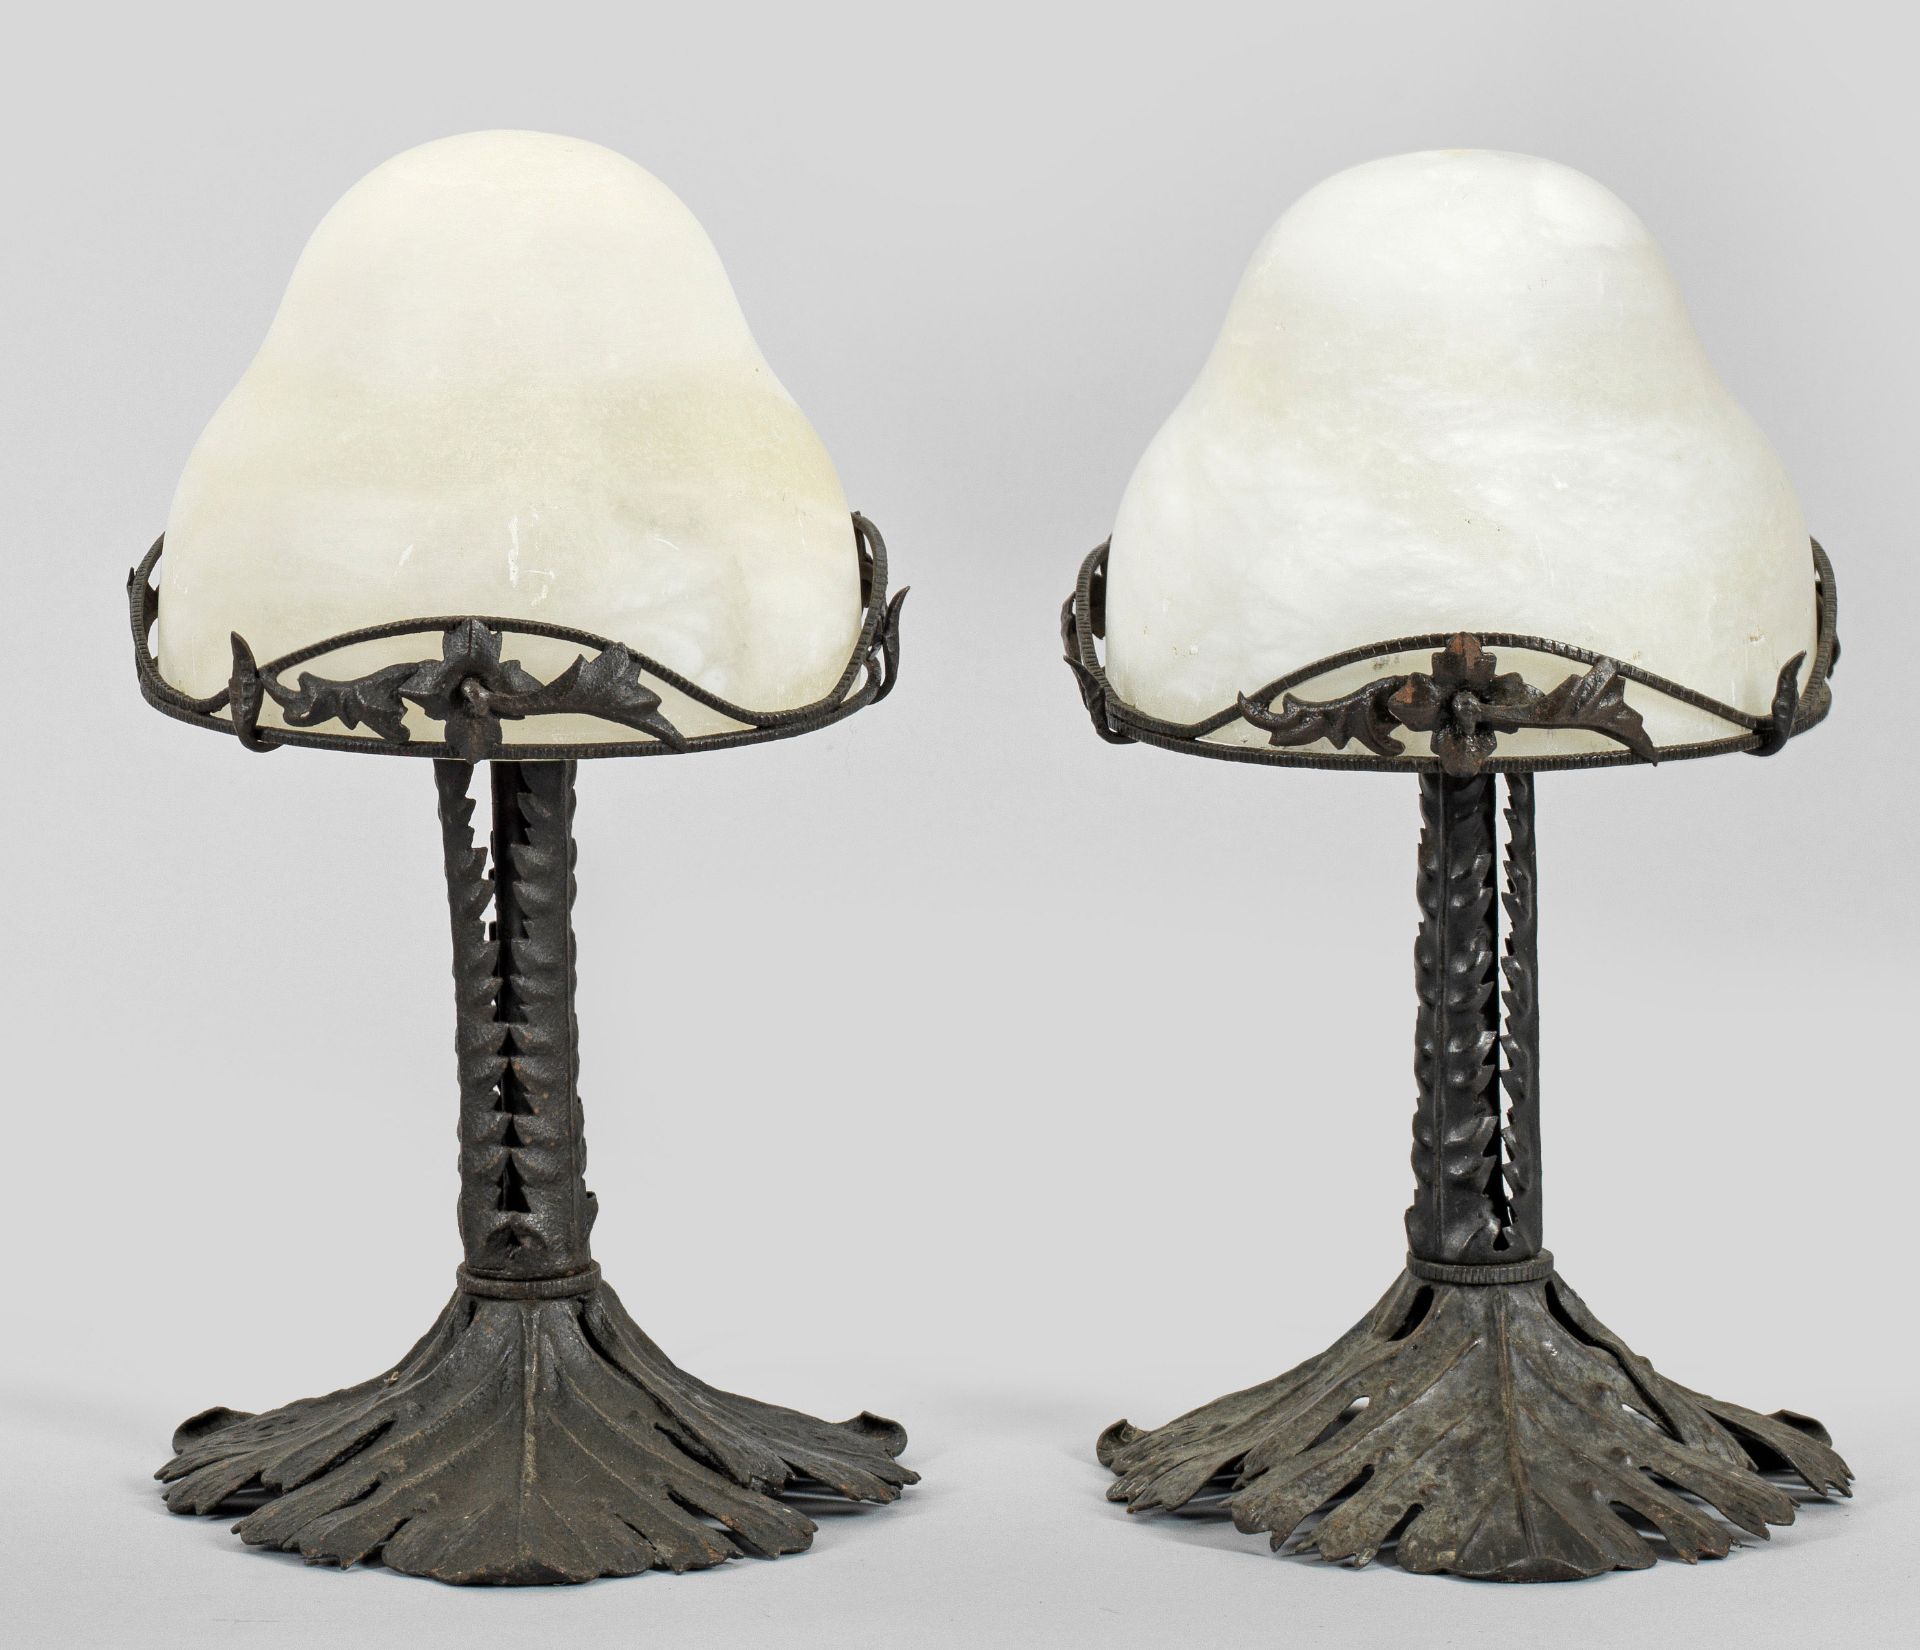 Paar Tischlampen im Jugendstil